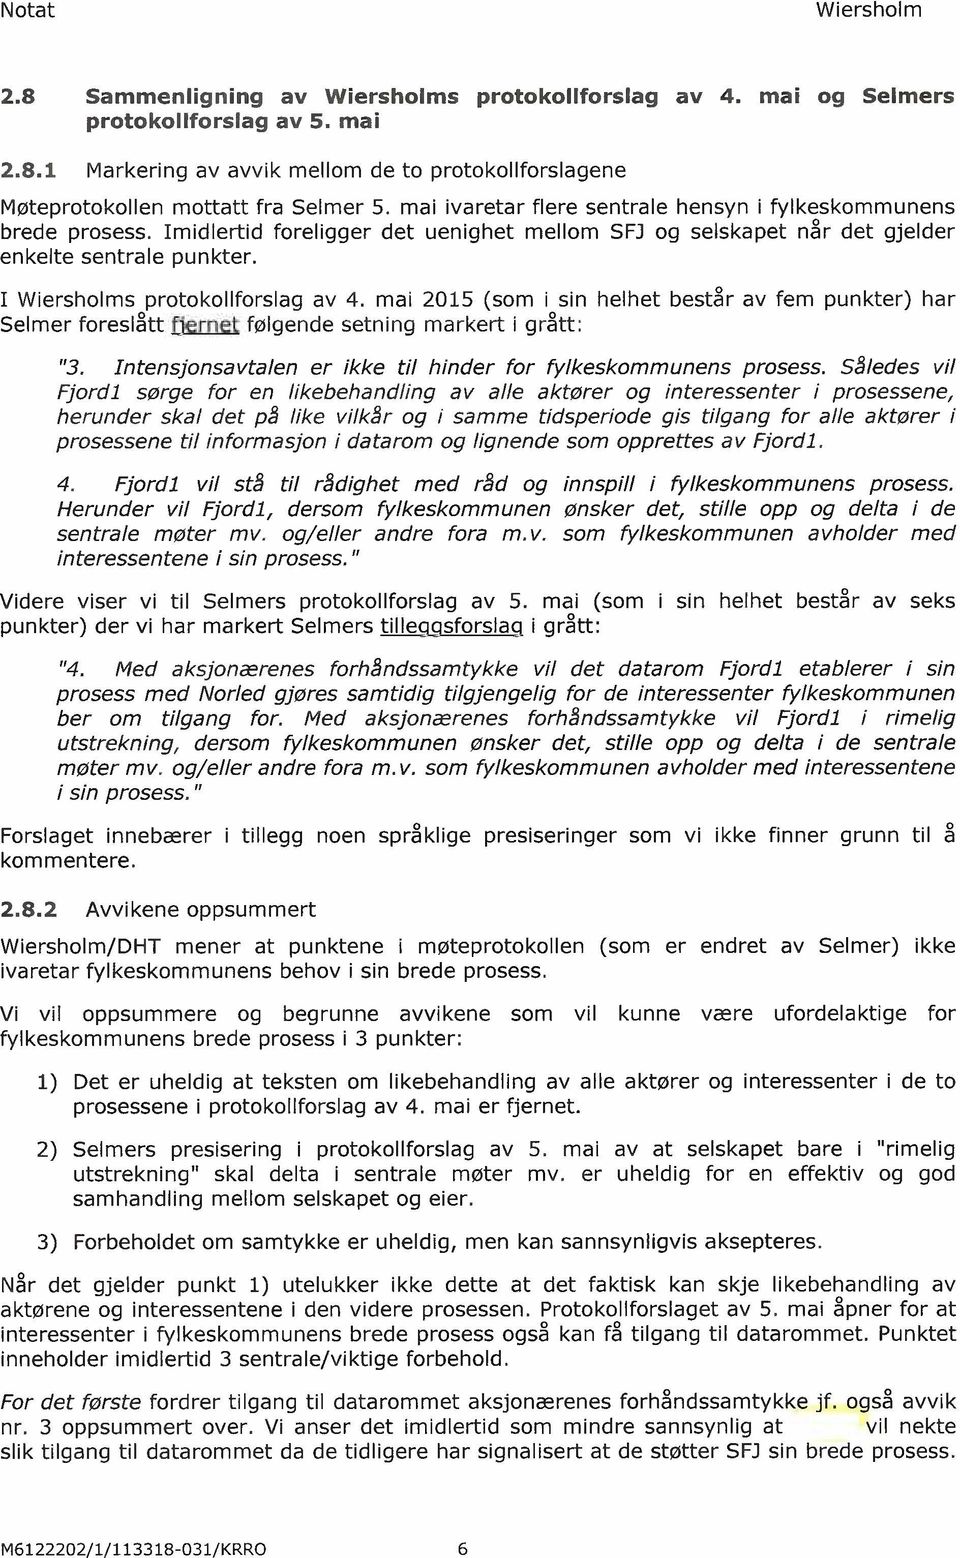 mai 2015 (som i sin helhet består av fem punkter) har Selmer foreslått fjernet fjed følgende setning markert i grått: "3. Intensjonsavtalen er ikke til hinder for fylkeskommunens prosess.